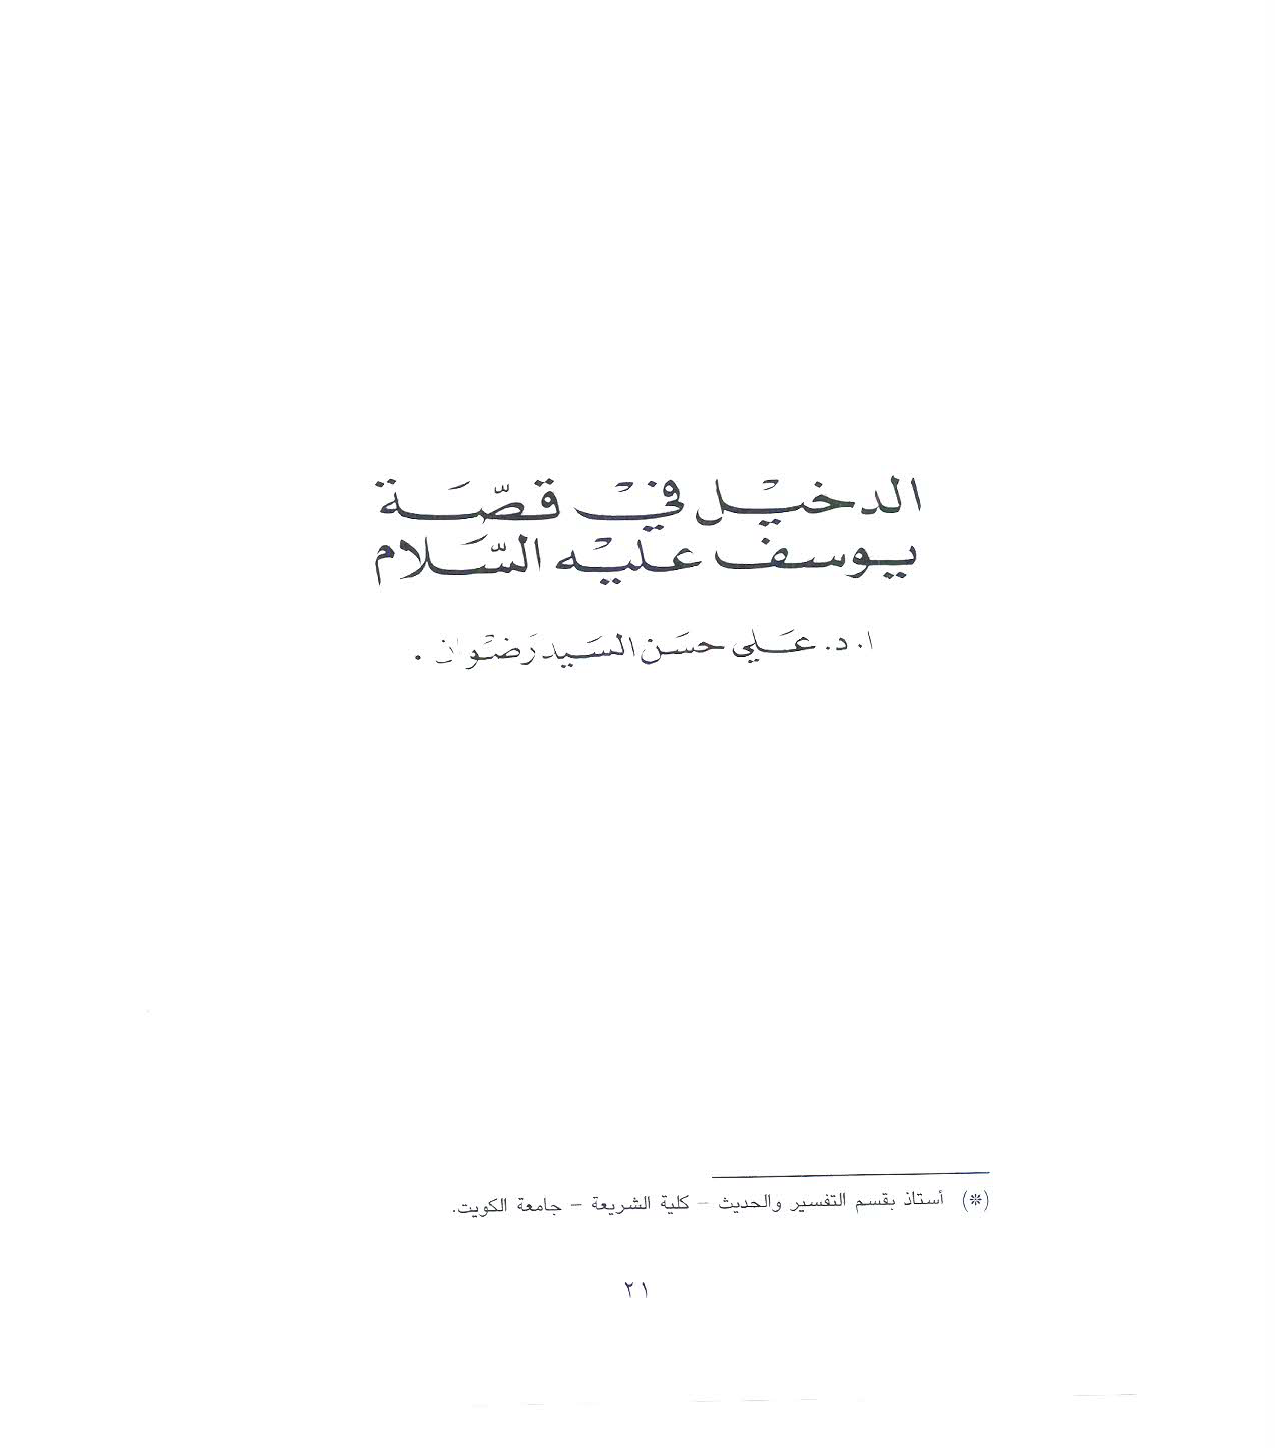 تحميل كتاب الدخيل في قصة يوسف عليه السلام للمؤلف: الدكتور علي حسن السيد رضوان